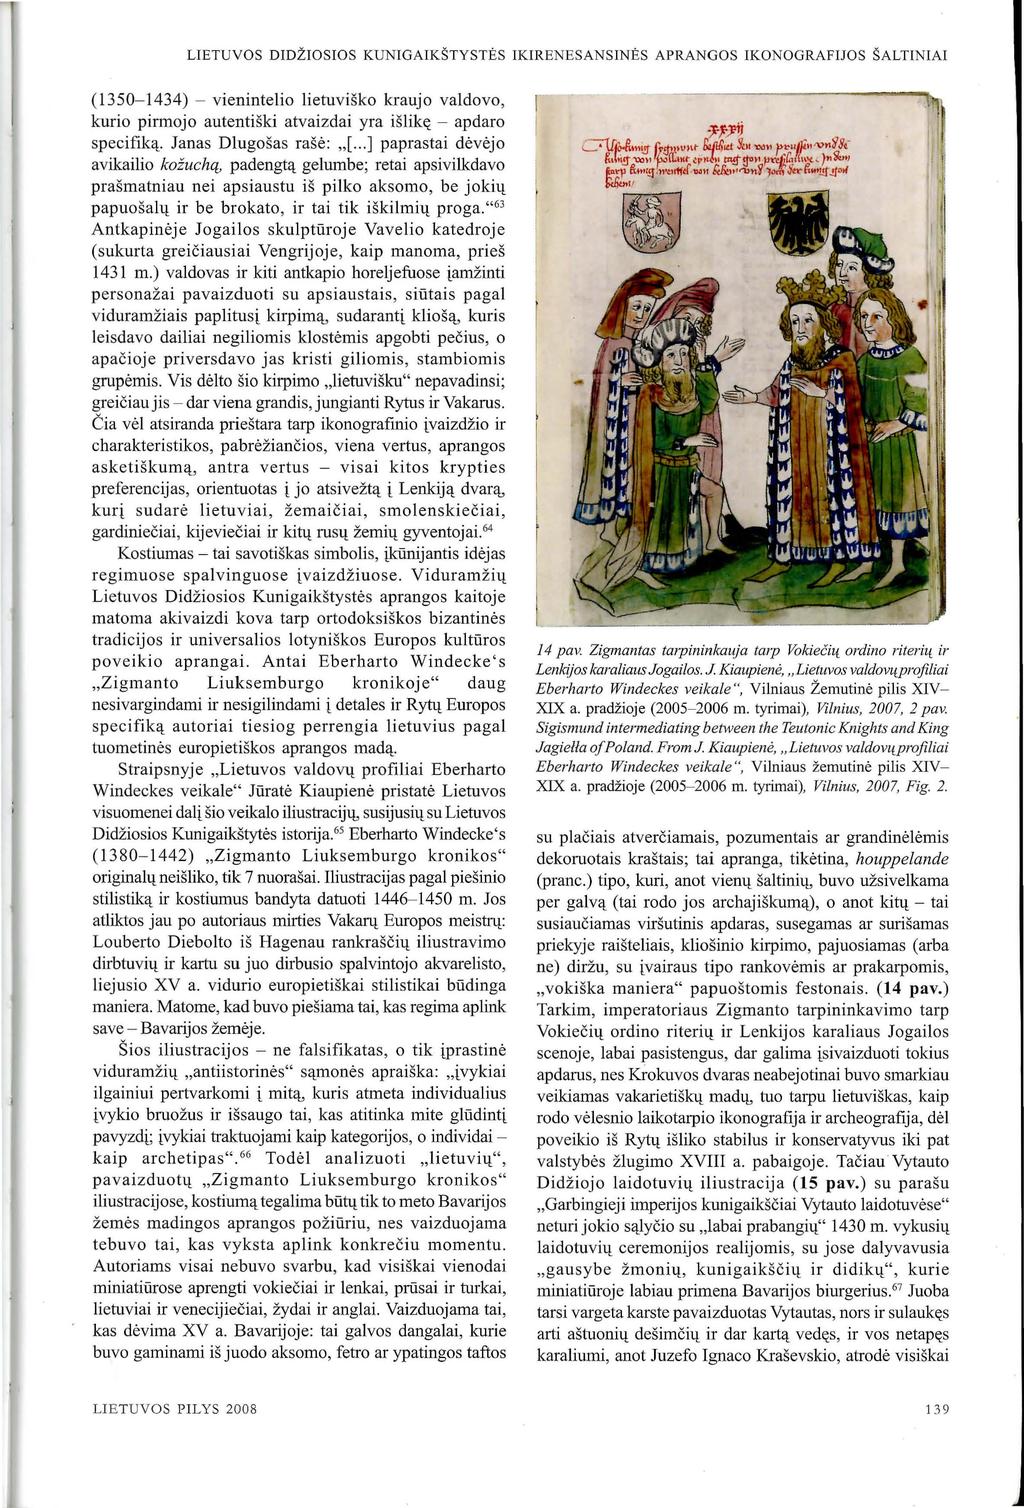 LIETUVOS DIDZIOSIOS KUNIGAIKSTYSTES IKIRENESANSINES APRANGOS IKONOGRAFIJOS SALTINIAI (1350-1434) - vienintelio lietuvisko kraujo valdovo, kurio pirmojo autentiski atvaizdai yra isliktt - apdaro